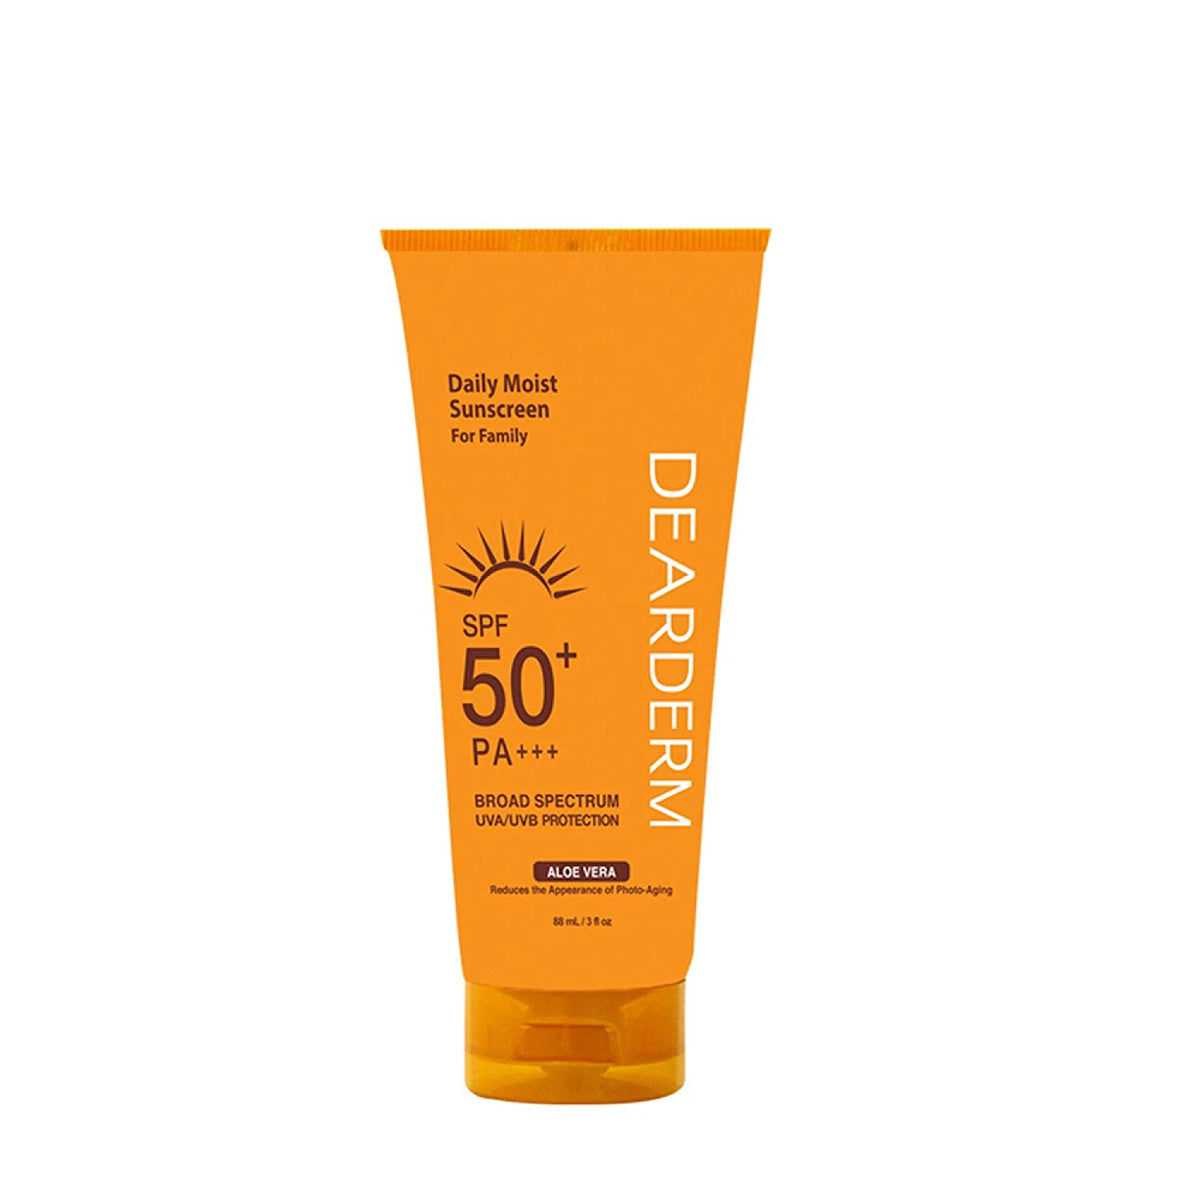 Sunscreen SPF 50+ broad spectrum - Blend Box